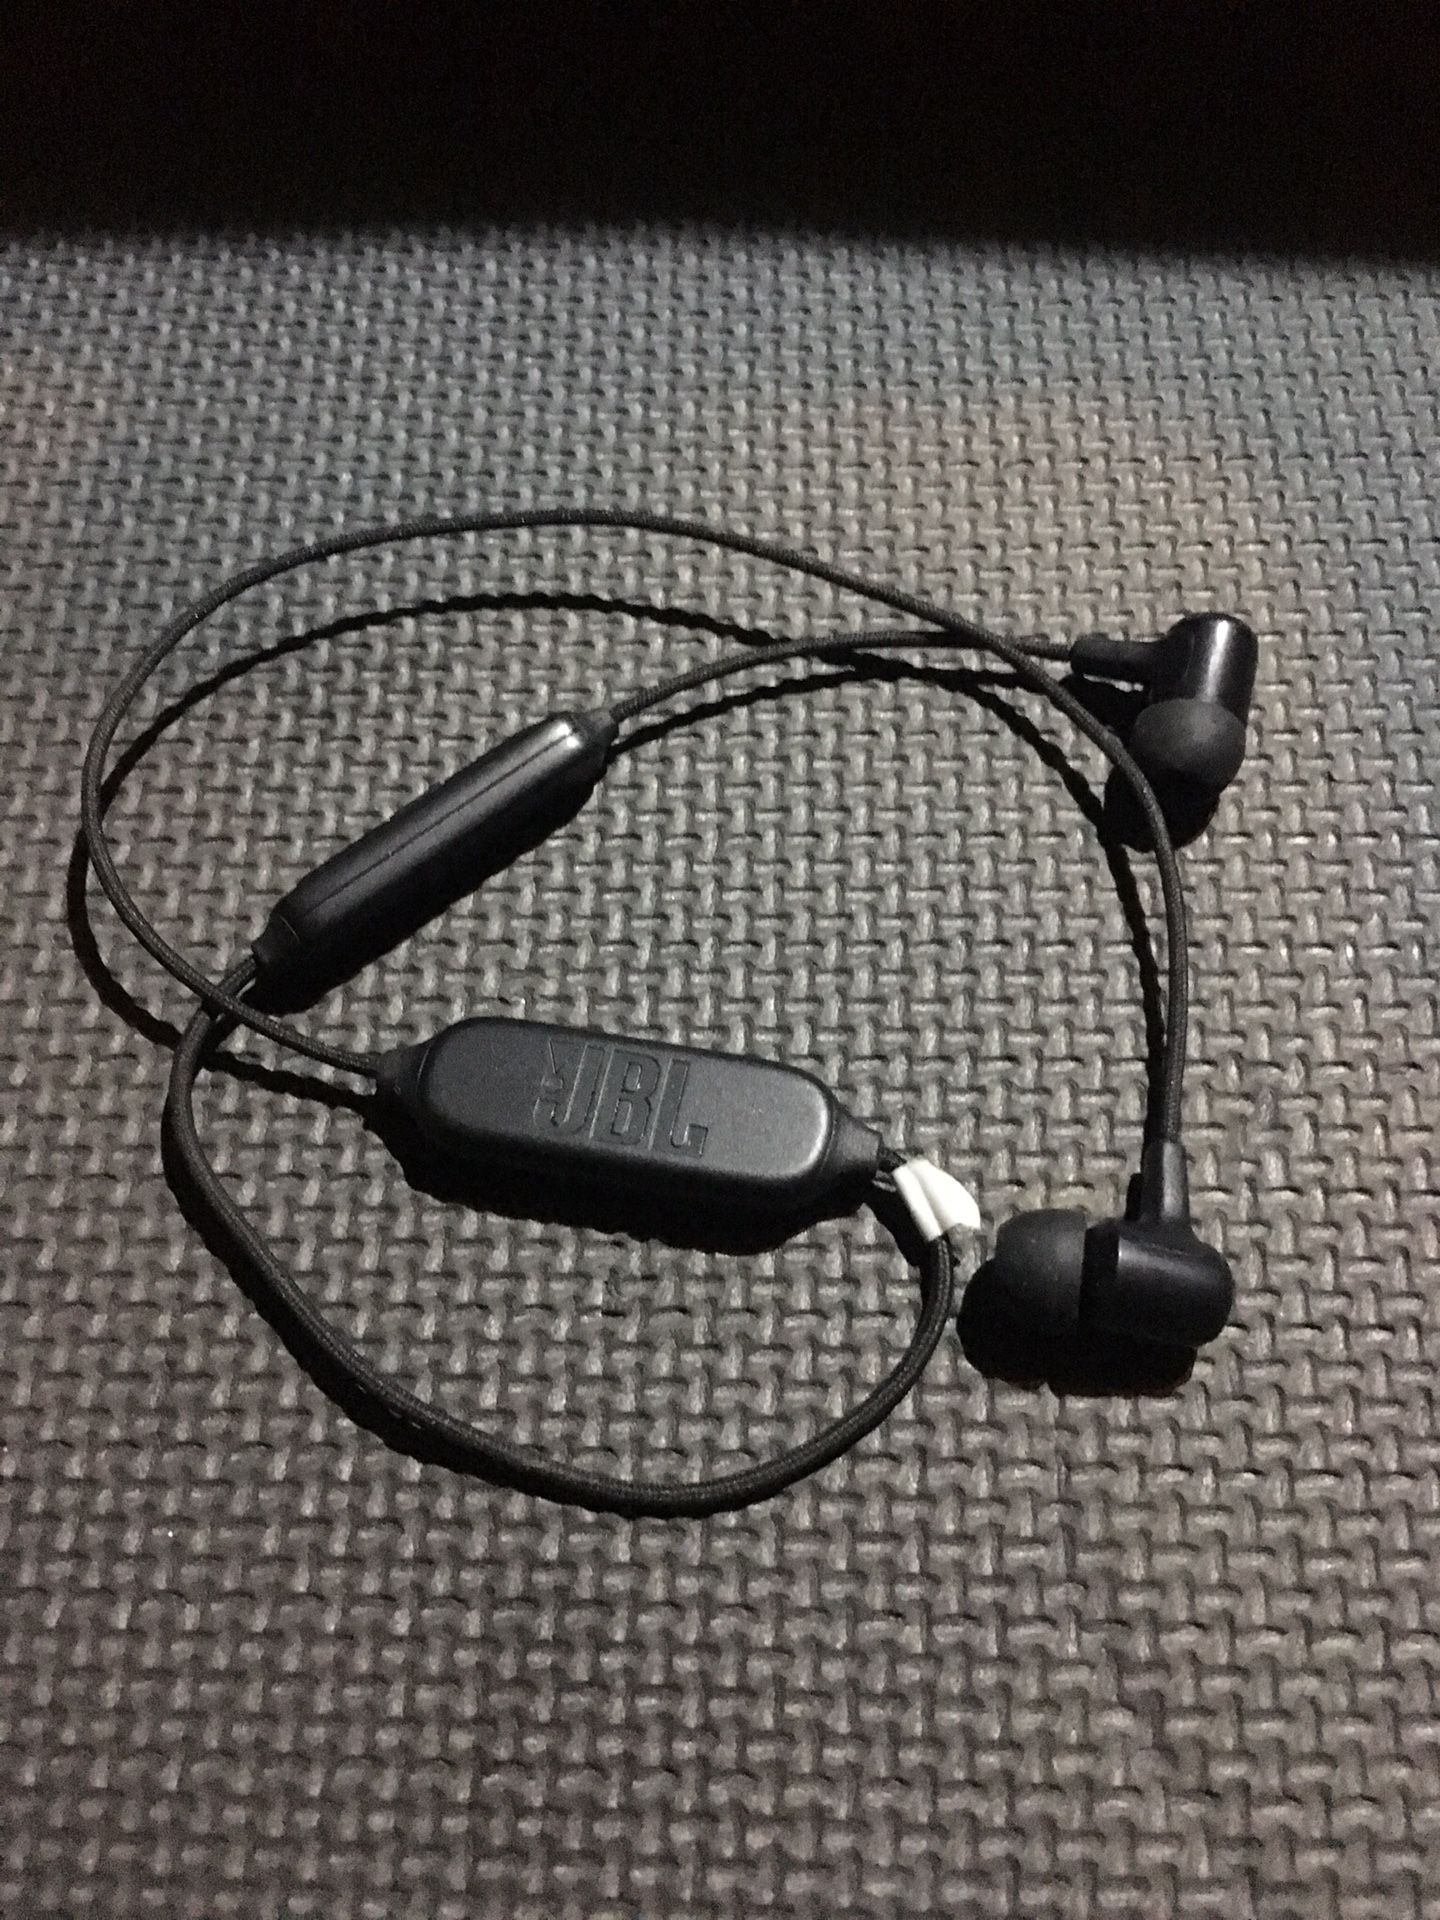 Jbl Bluetooth headphones